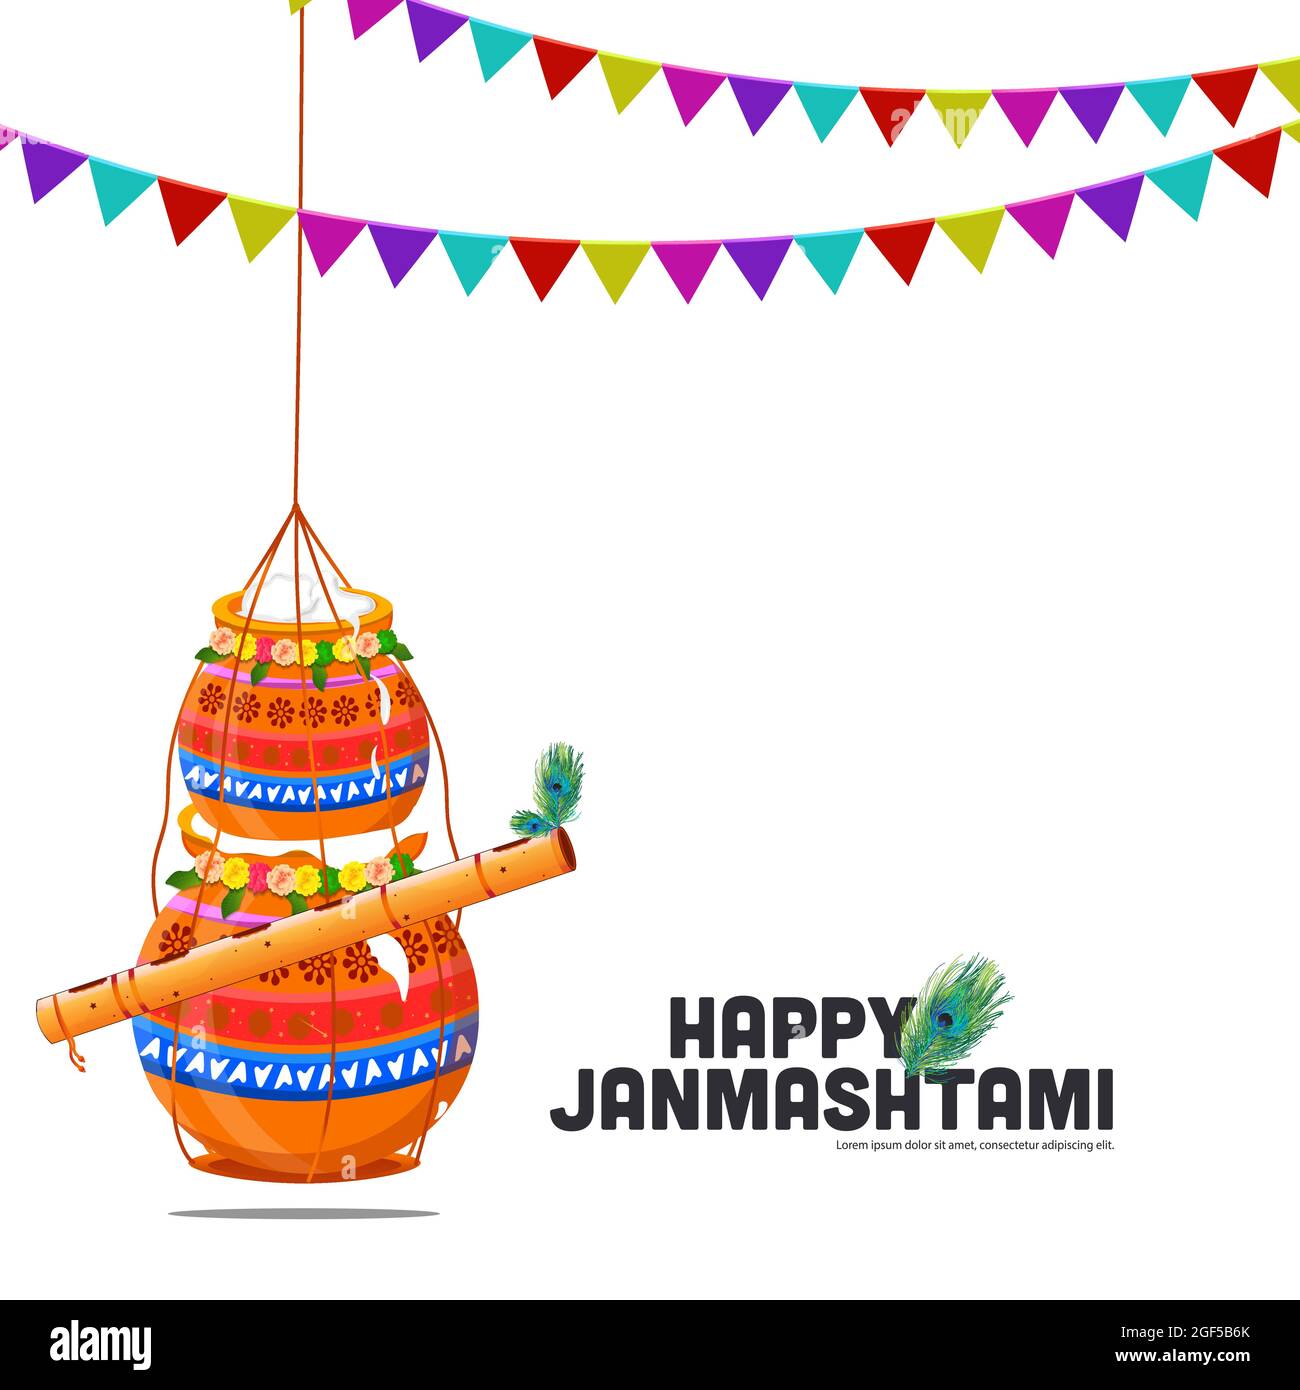 Illustrazione degli sfondi del banner di celebrazione, poster di carte per Lord Krishna in Happy Janmashtami festival dell'India, Shri Krishan Janmashtami Illustrazione Vettoriale